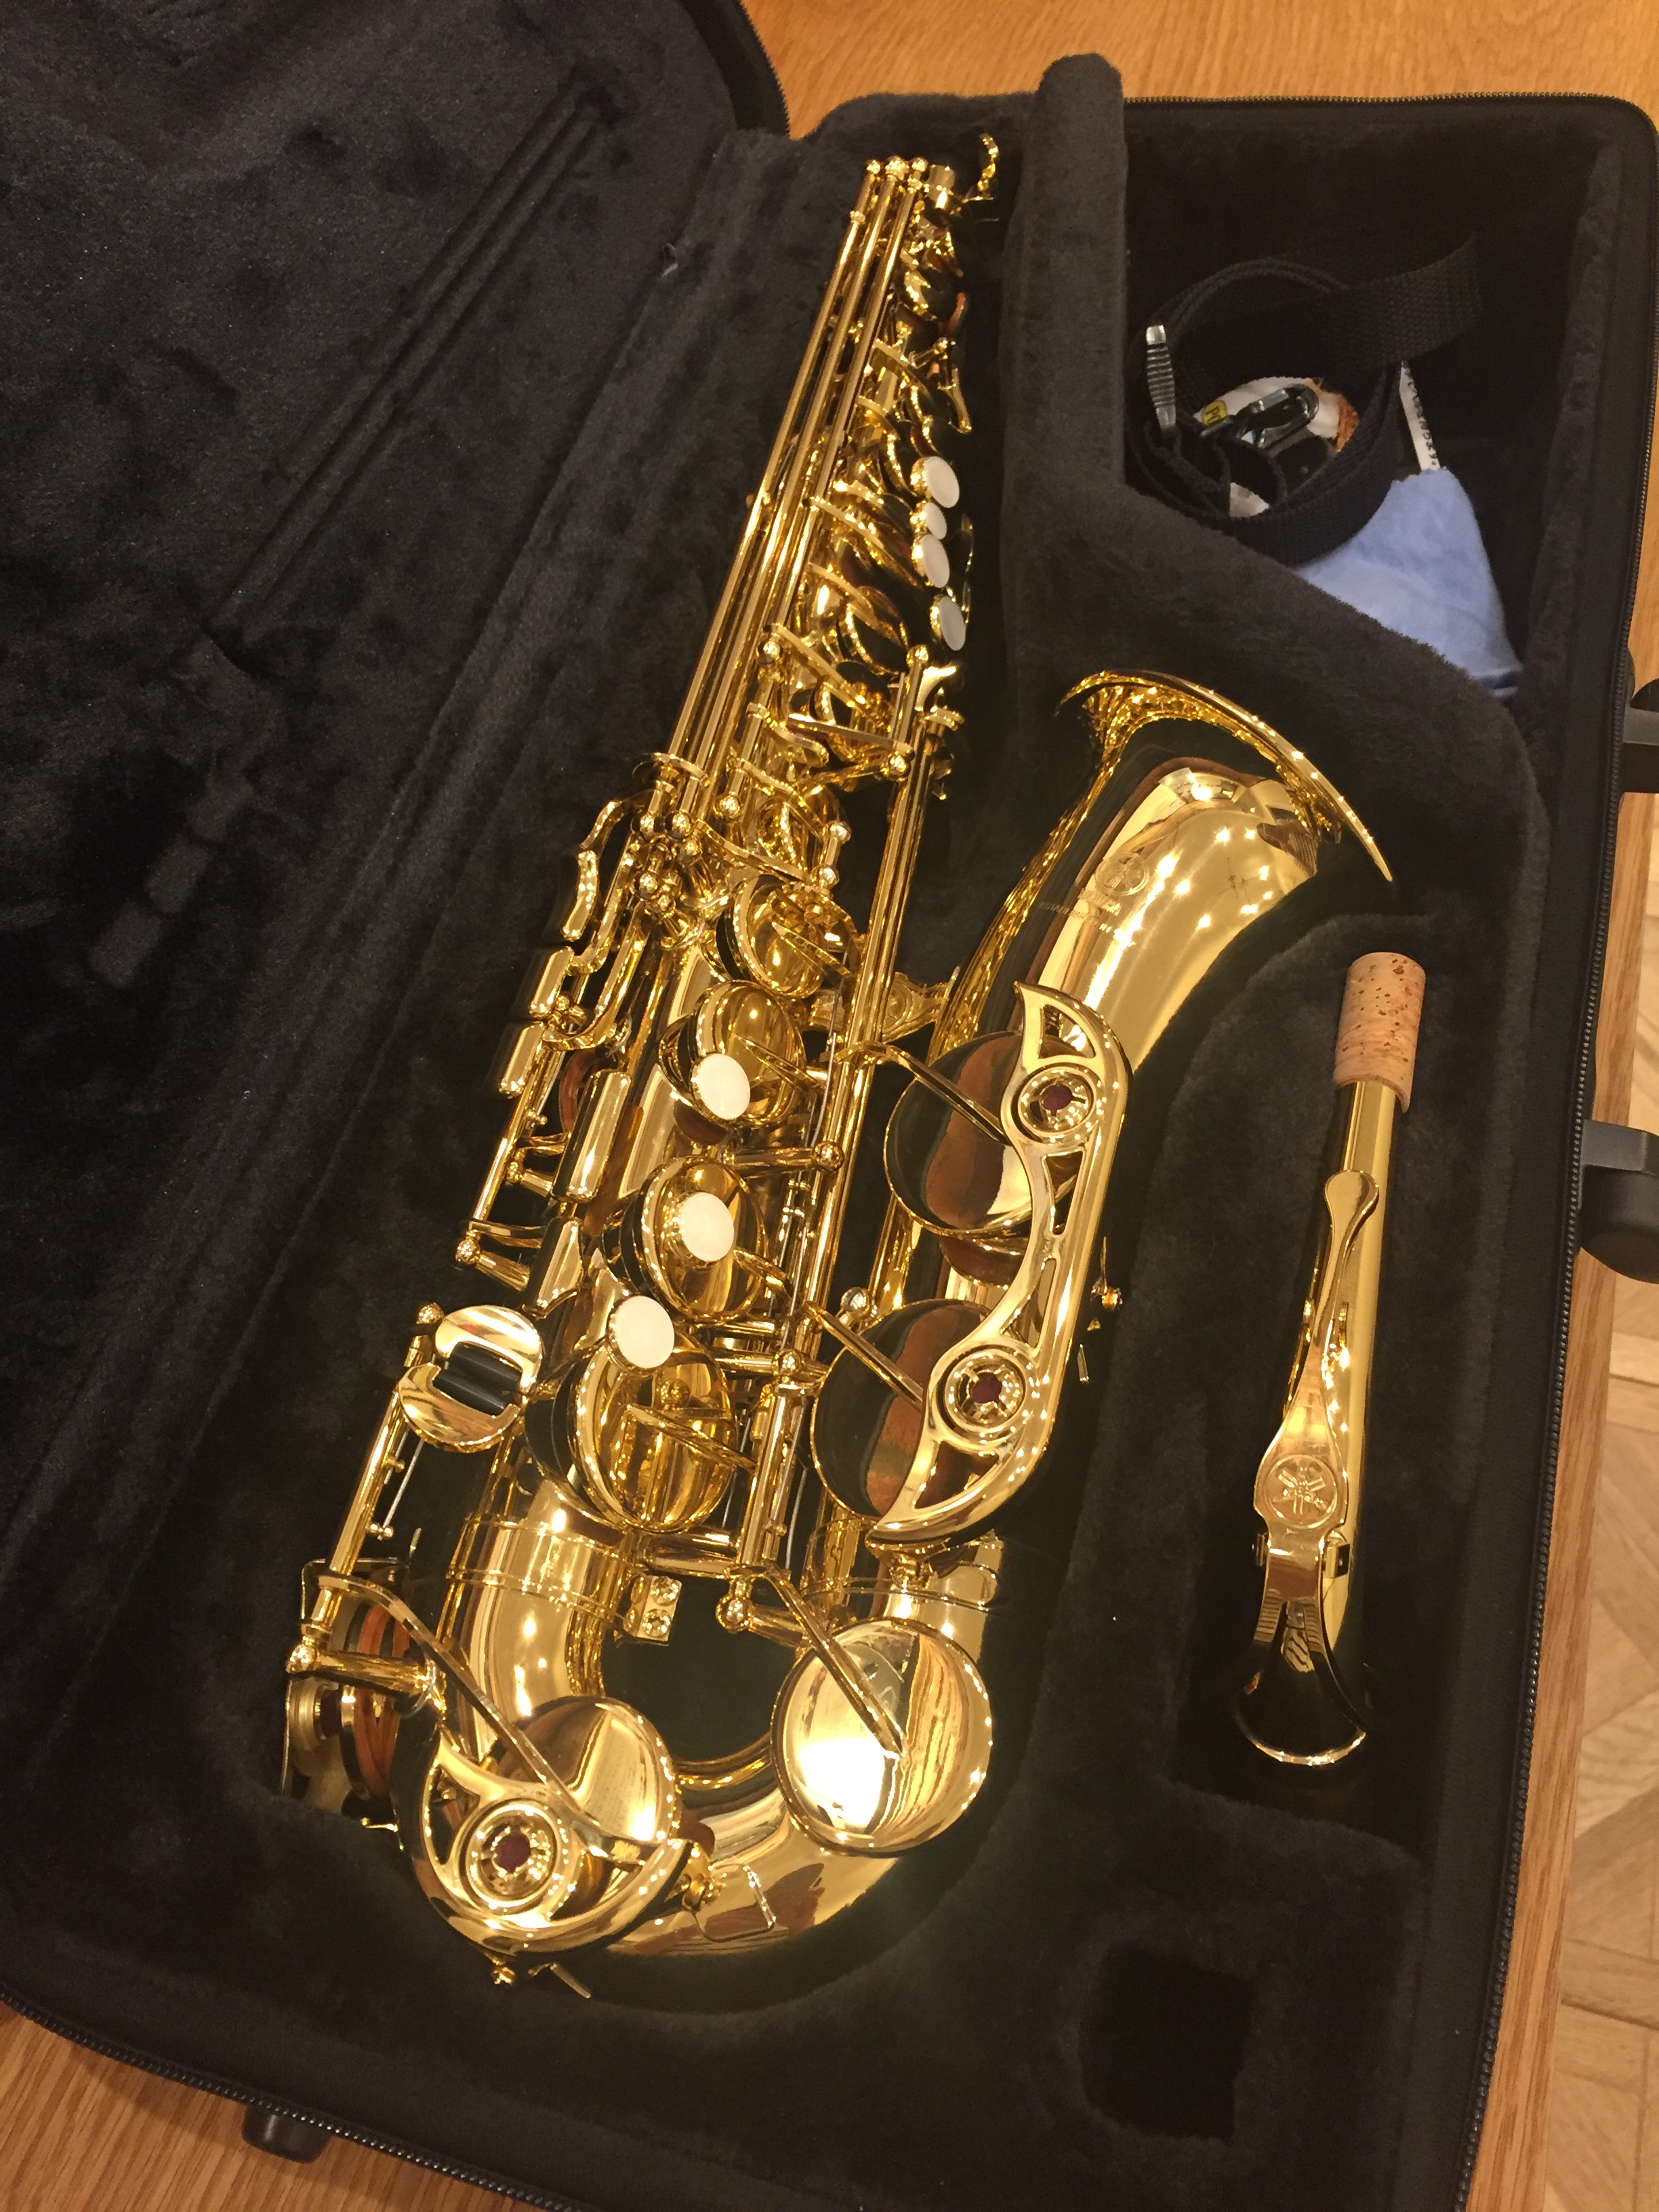 51868円 注目ブランド Saxophone 真ちゅう製ストレートソプラノサックスBbBフラットインストゥルメントナチュラルシェルキーカーブパターンケース付き サックス 管楽器 Color : Gold